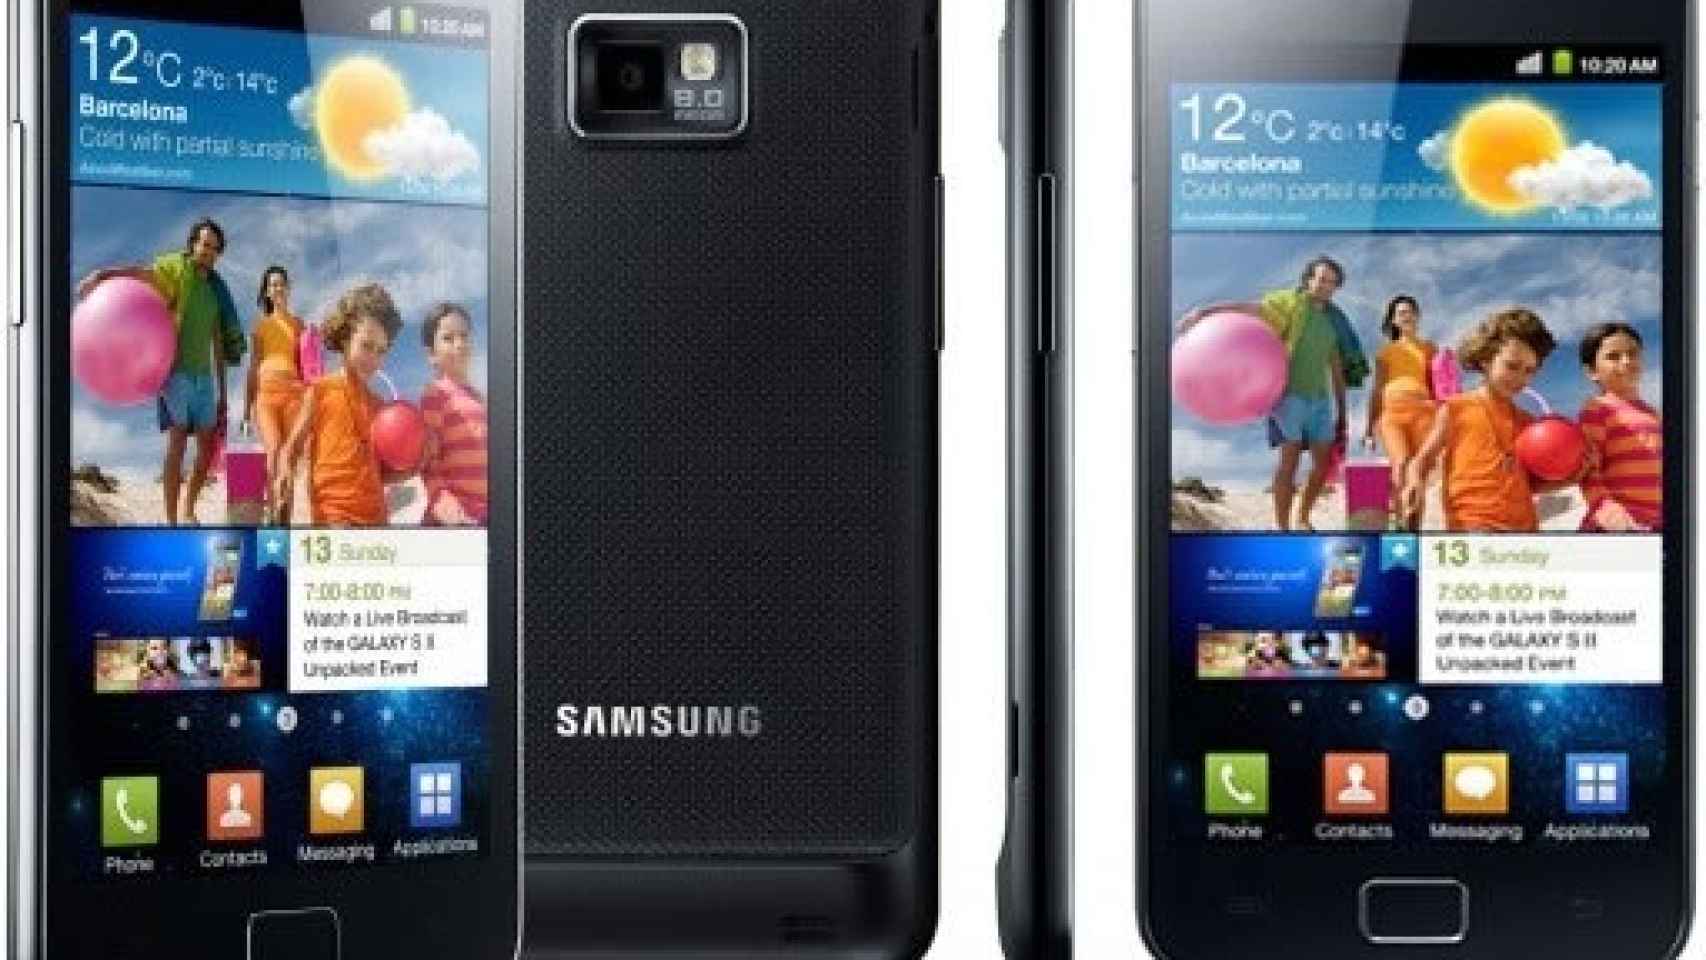 Samsung Galaxy S II rompe la barrera del 1Ghz con algo de retraso